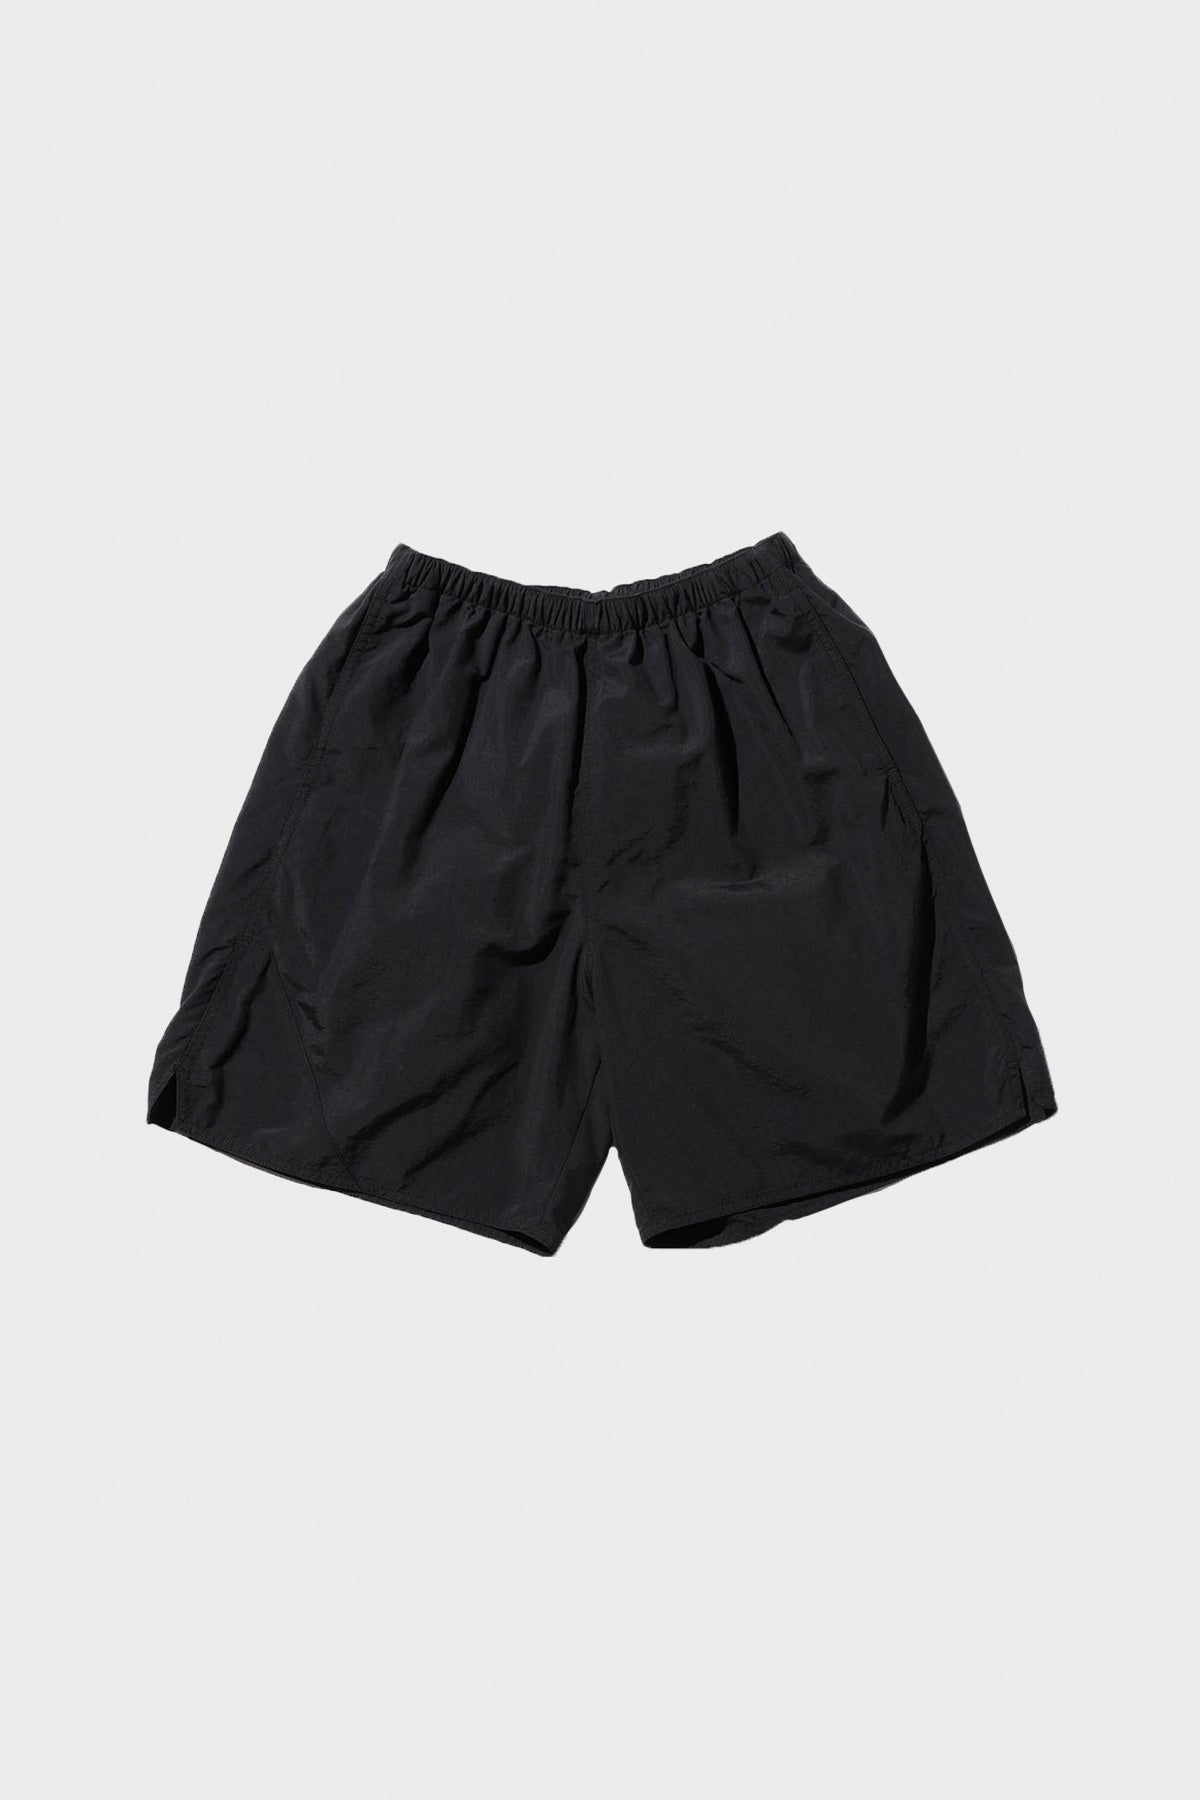 MIL Athletic Shorts Nylon - Black - 1